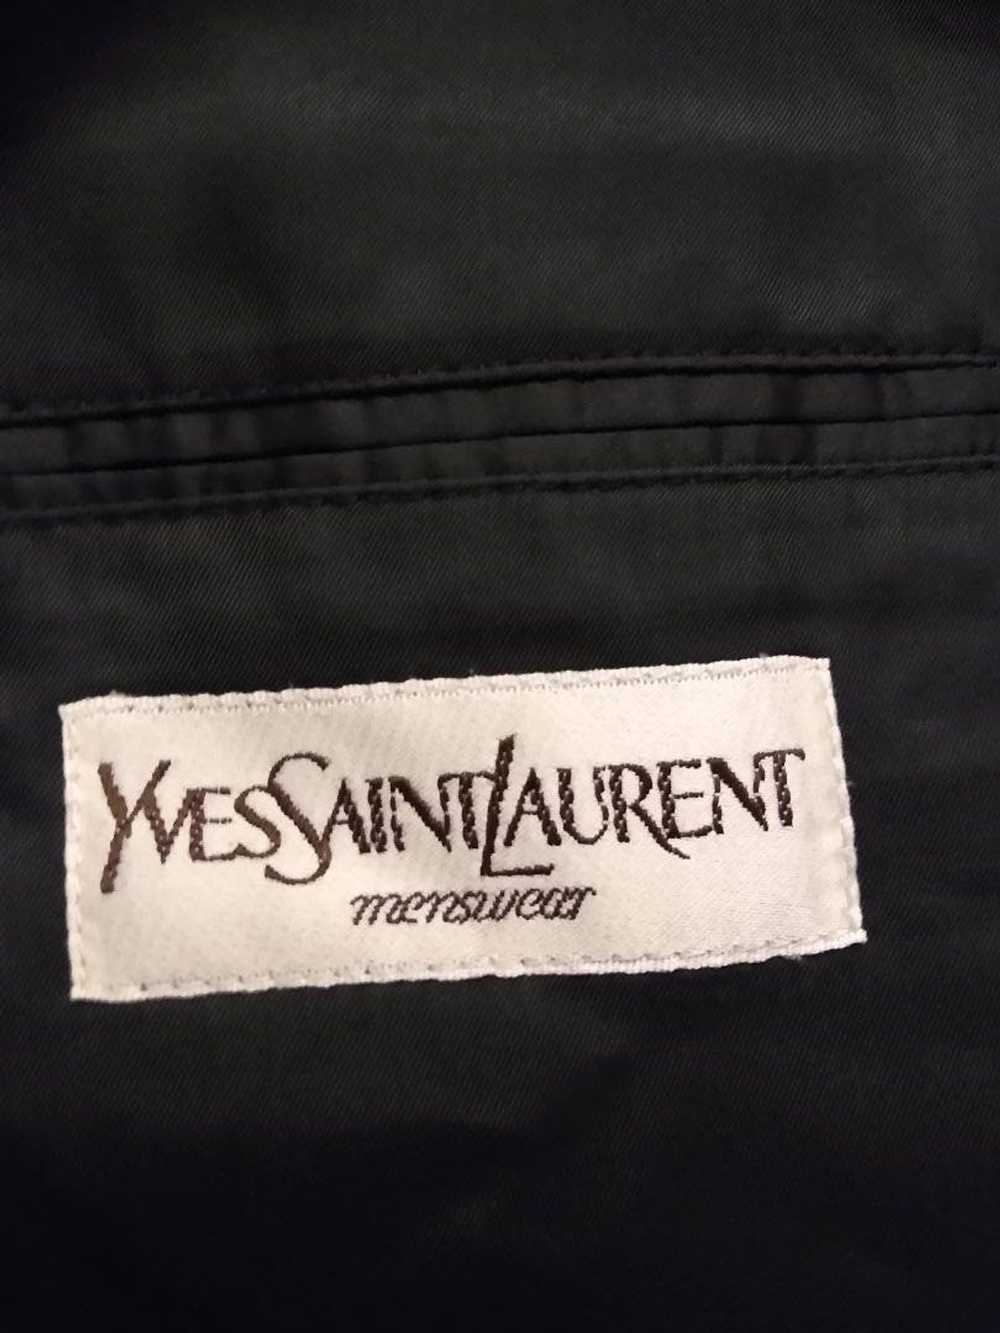 Yves Saint Laurent Vintage 70's 100% Wool Pinstri… - image 3